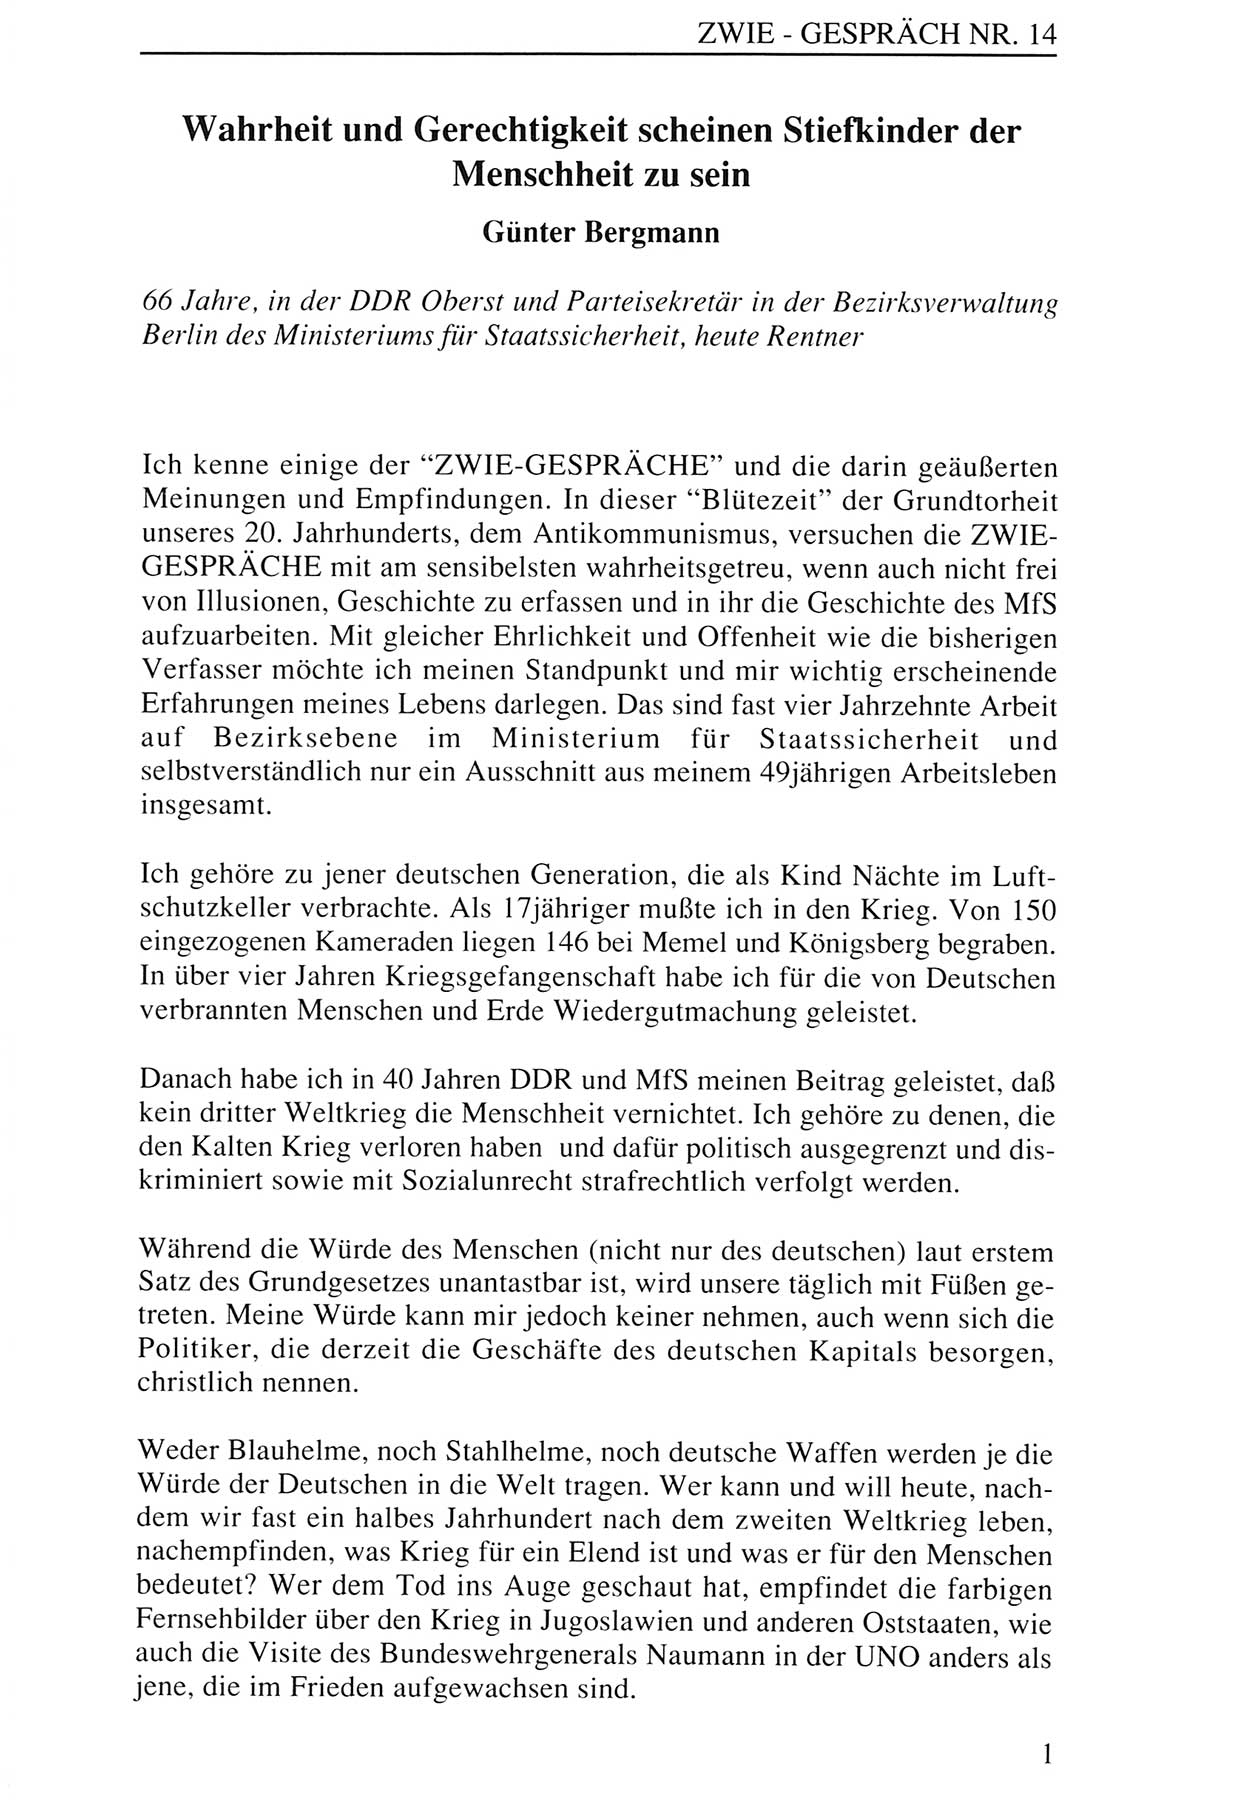 Zwie-Gespräch, Beiträge zur Aufarbeitung der Staatssicherheits-Vergangenheit [Deutsche Demokratische Republik (DDR)], Ausgabe Nr. 14, Berlin 1993, Seite 1 (Zwie-Gespr. Ausg. 14 1993, S. 1)